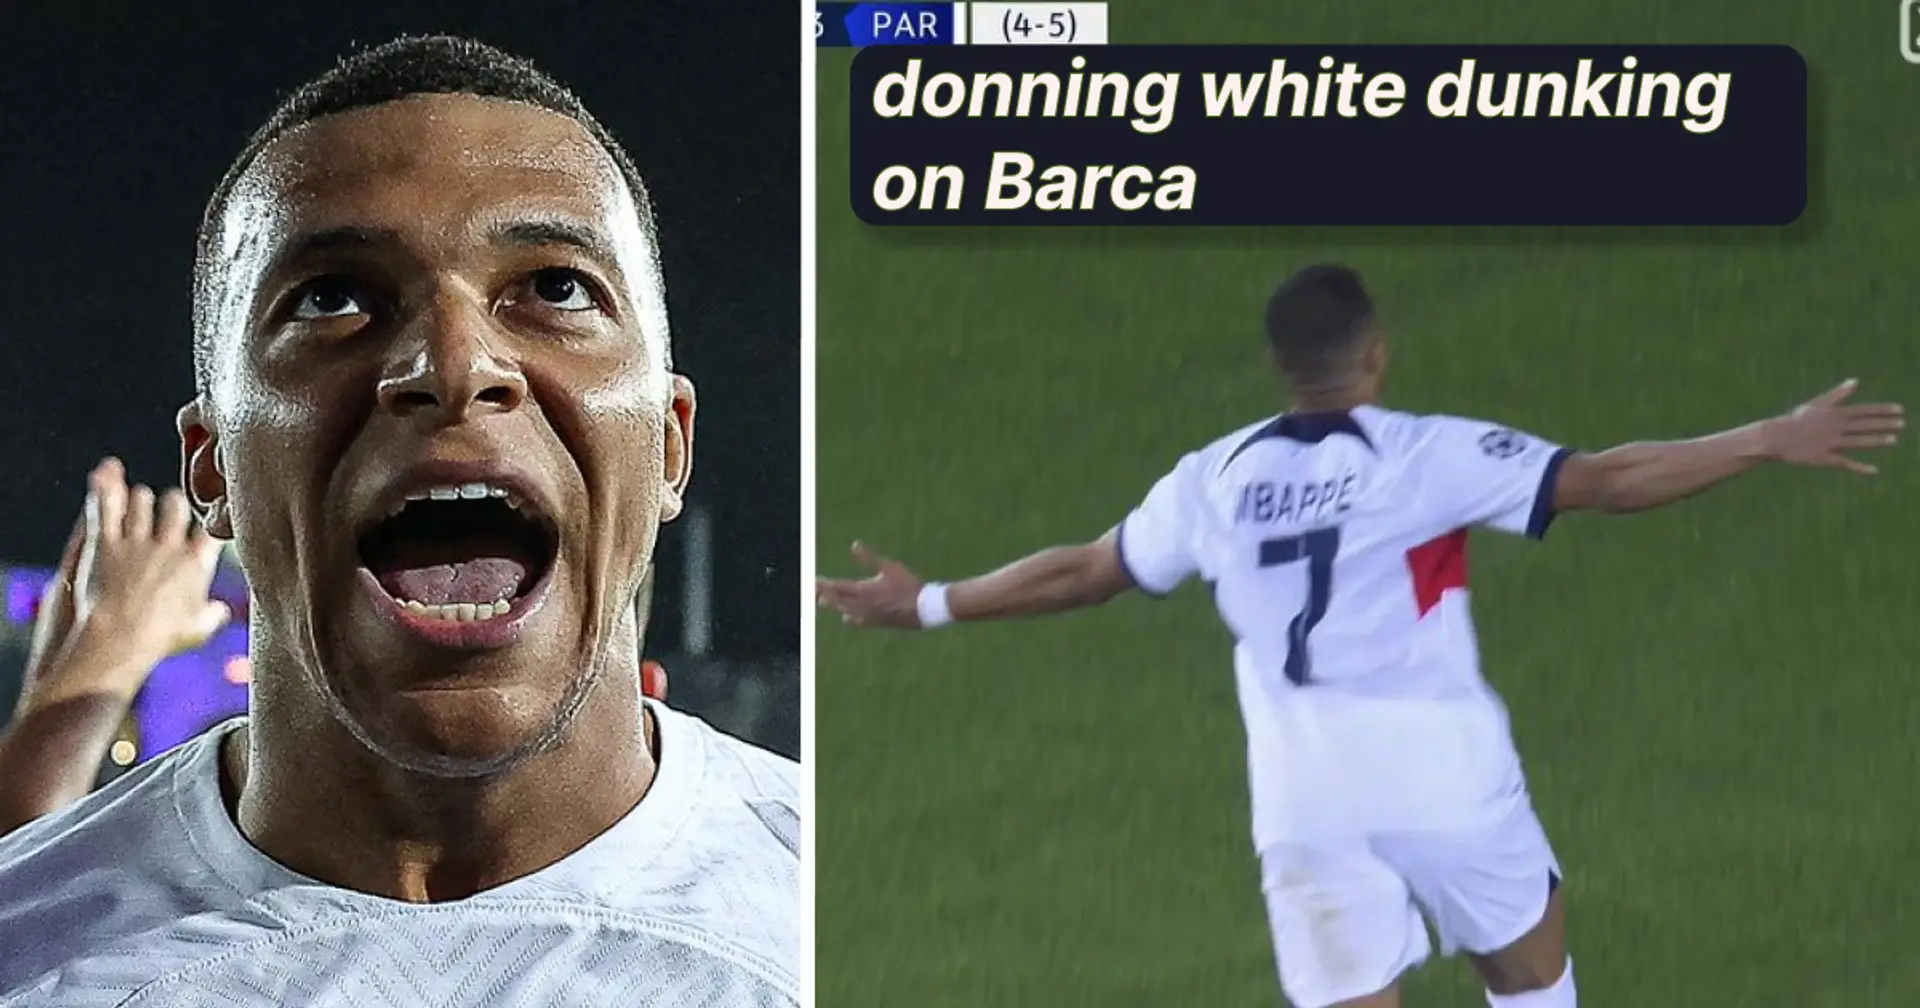 'No es la primera vez ni la última': los aficionados del Real Madrid reaccionan a Mbappé destruyendo al Barça vestido de blanco